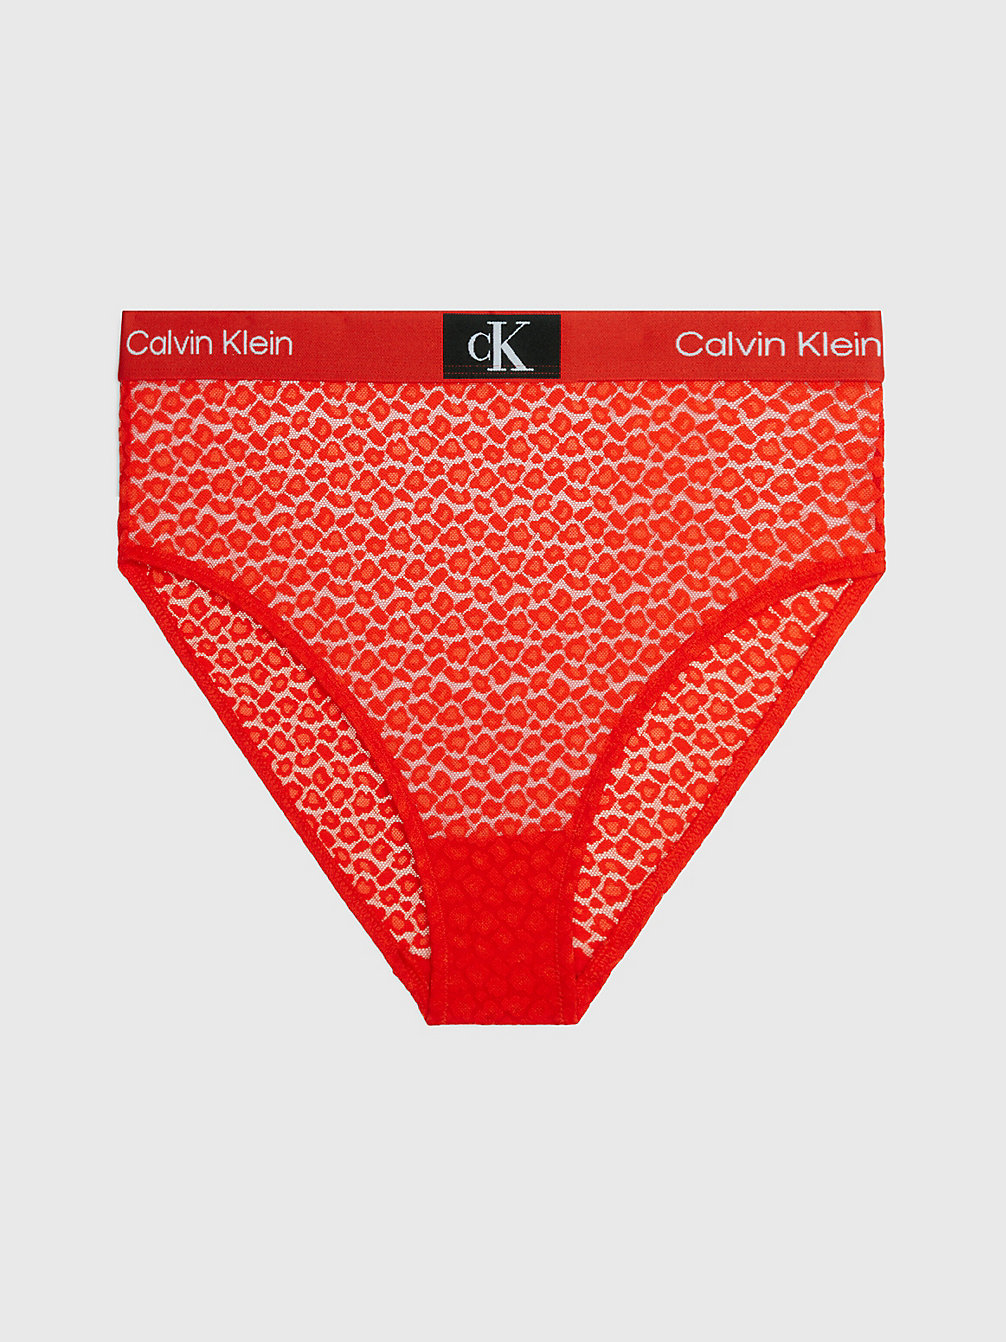 HAZARD Spitzen-Bikinislip Mit Hoher Taille - Ck96 undefined Damen Calvin Klein